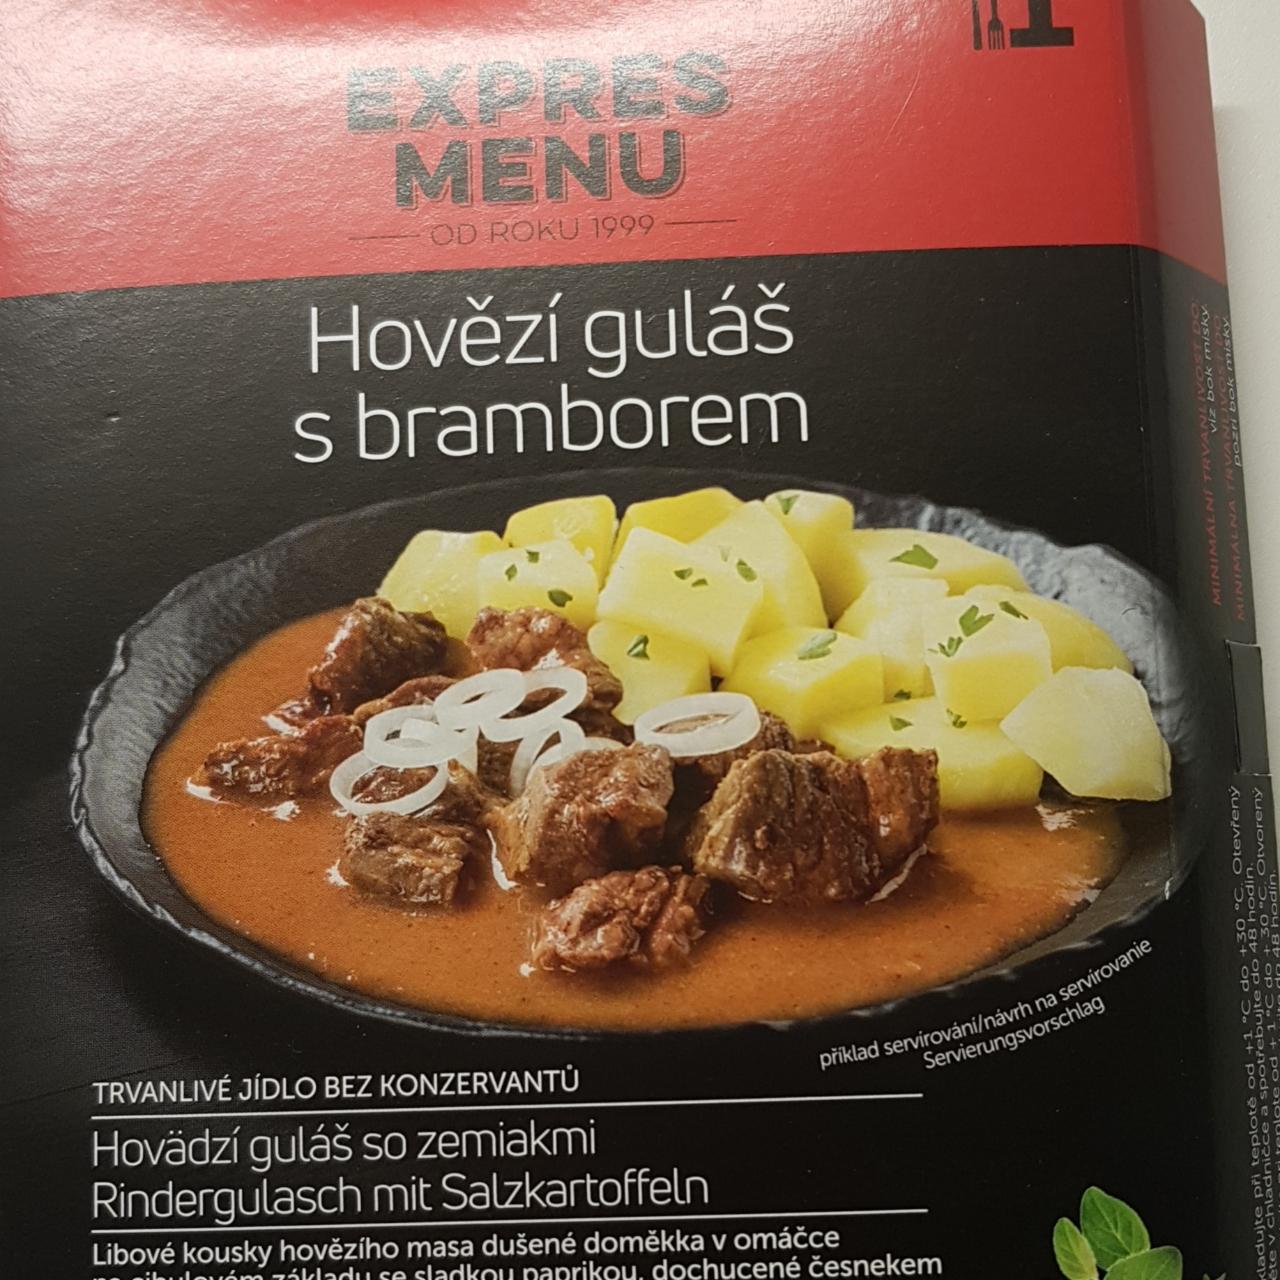 Fotografie - Hovězí guláš s bramborem Expres menu